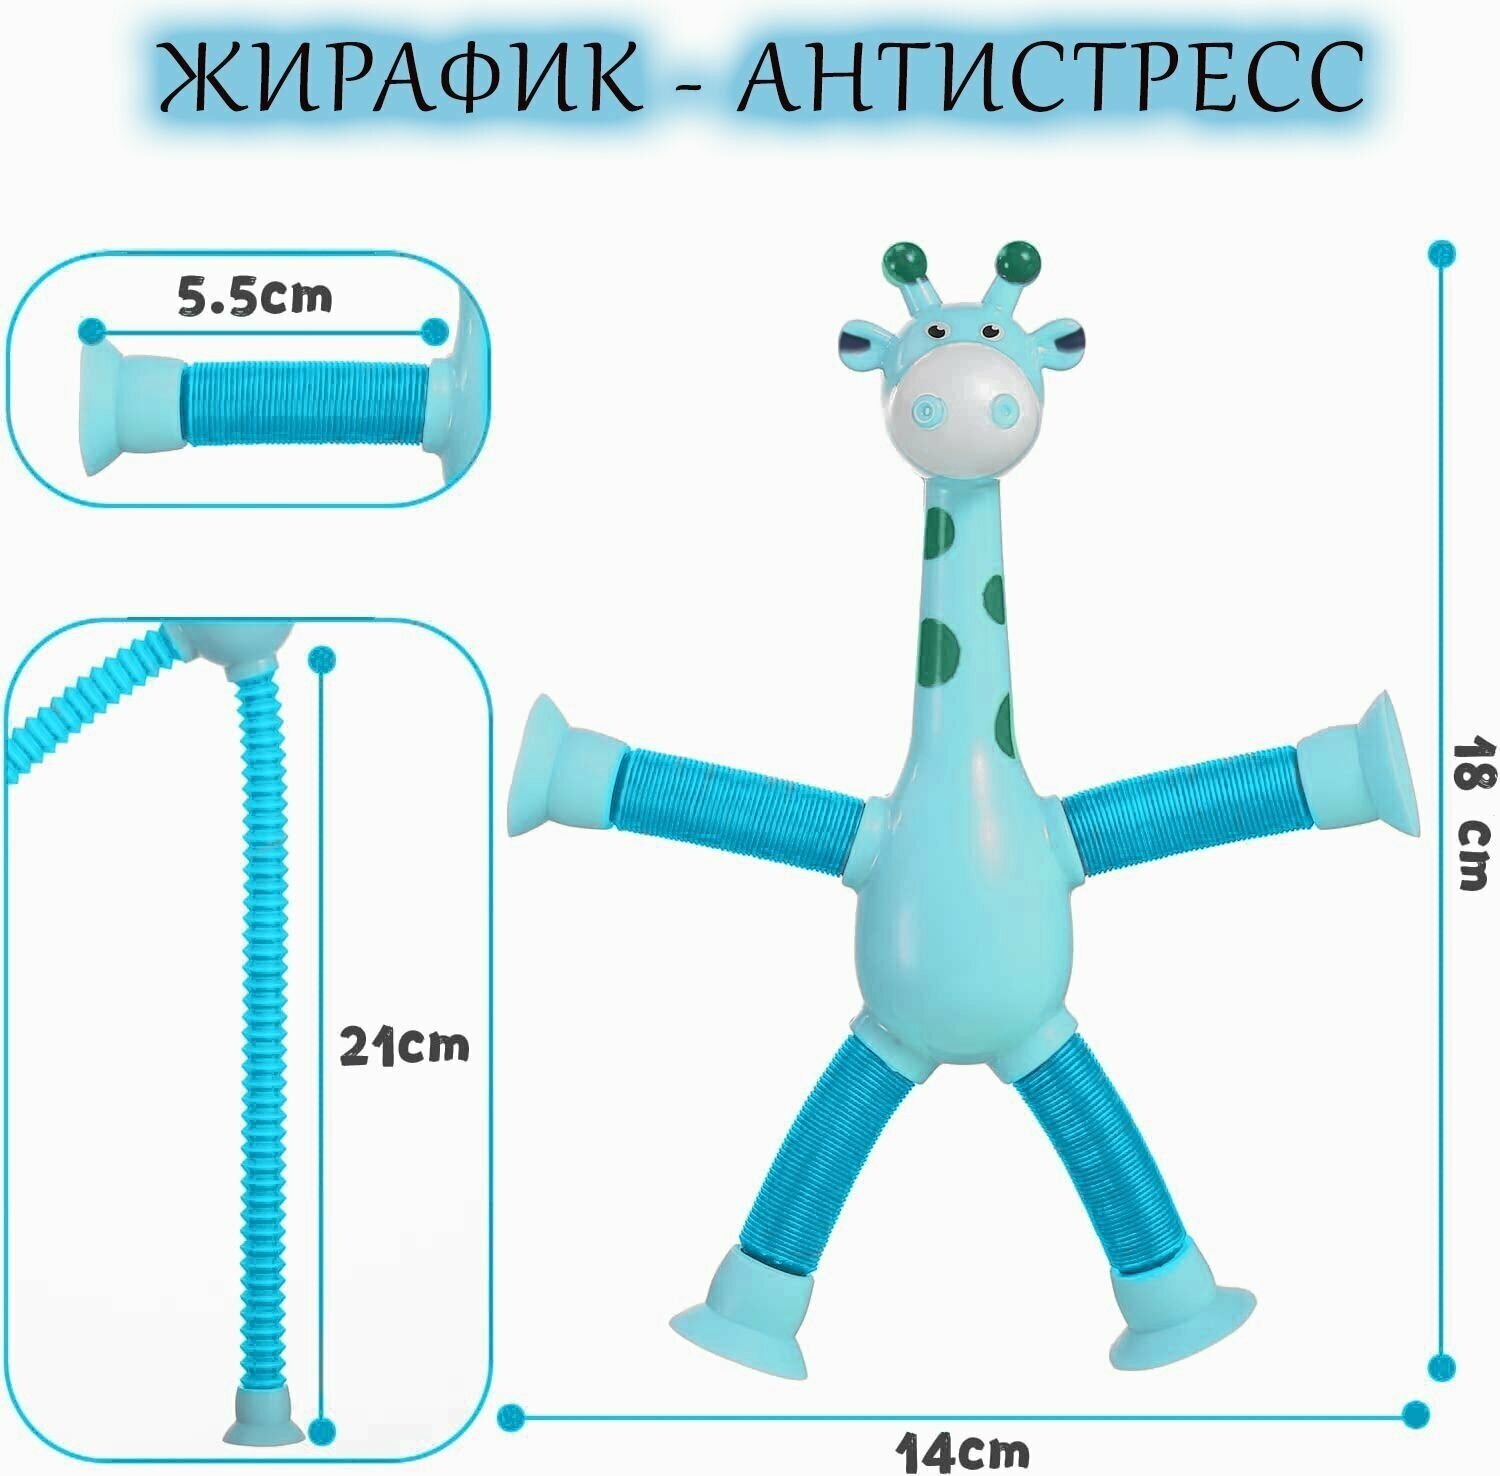 Игрушка на присосках синий Жирафик из поп трубок для снятия стресса у детей и взрослых, подарок на день рождения.